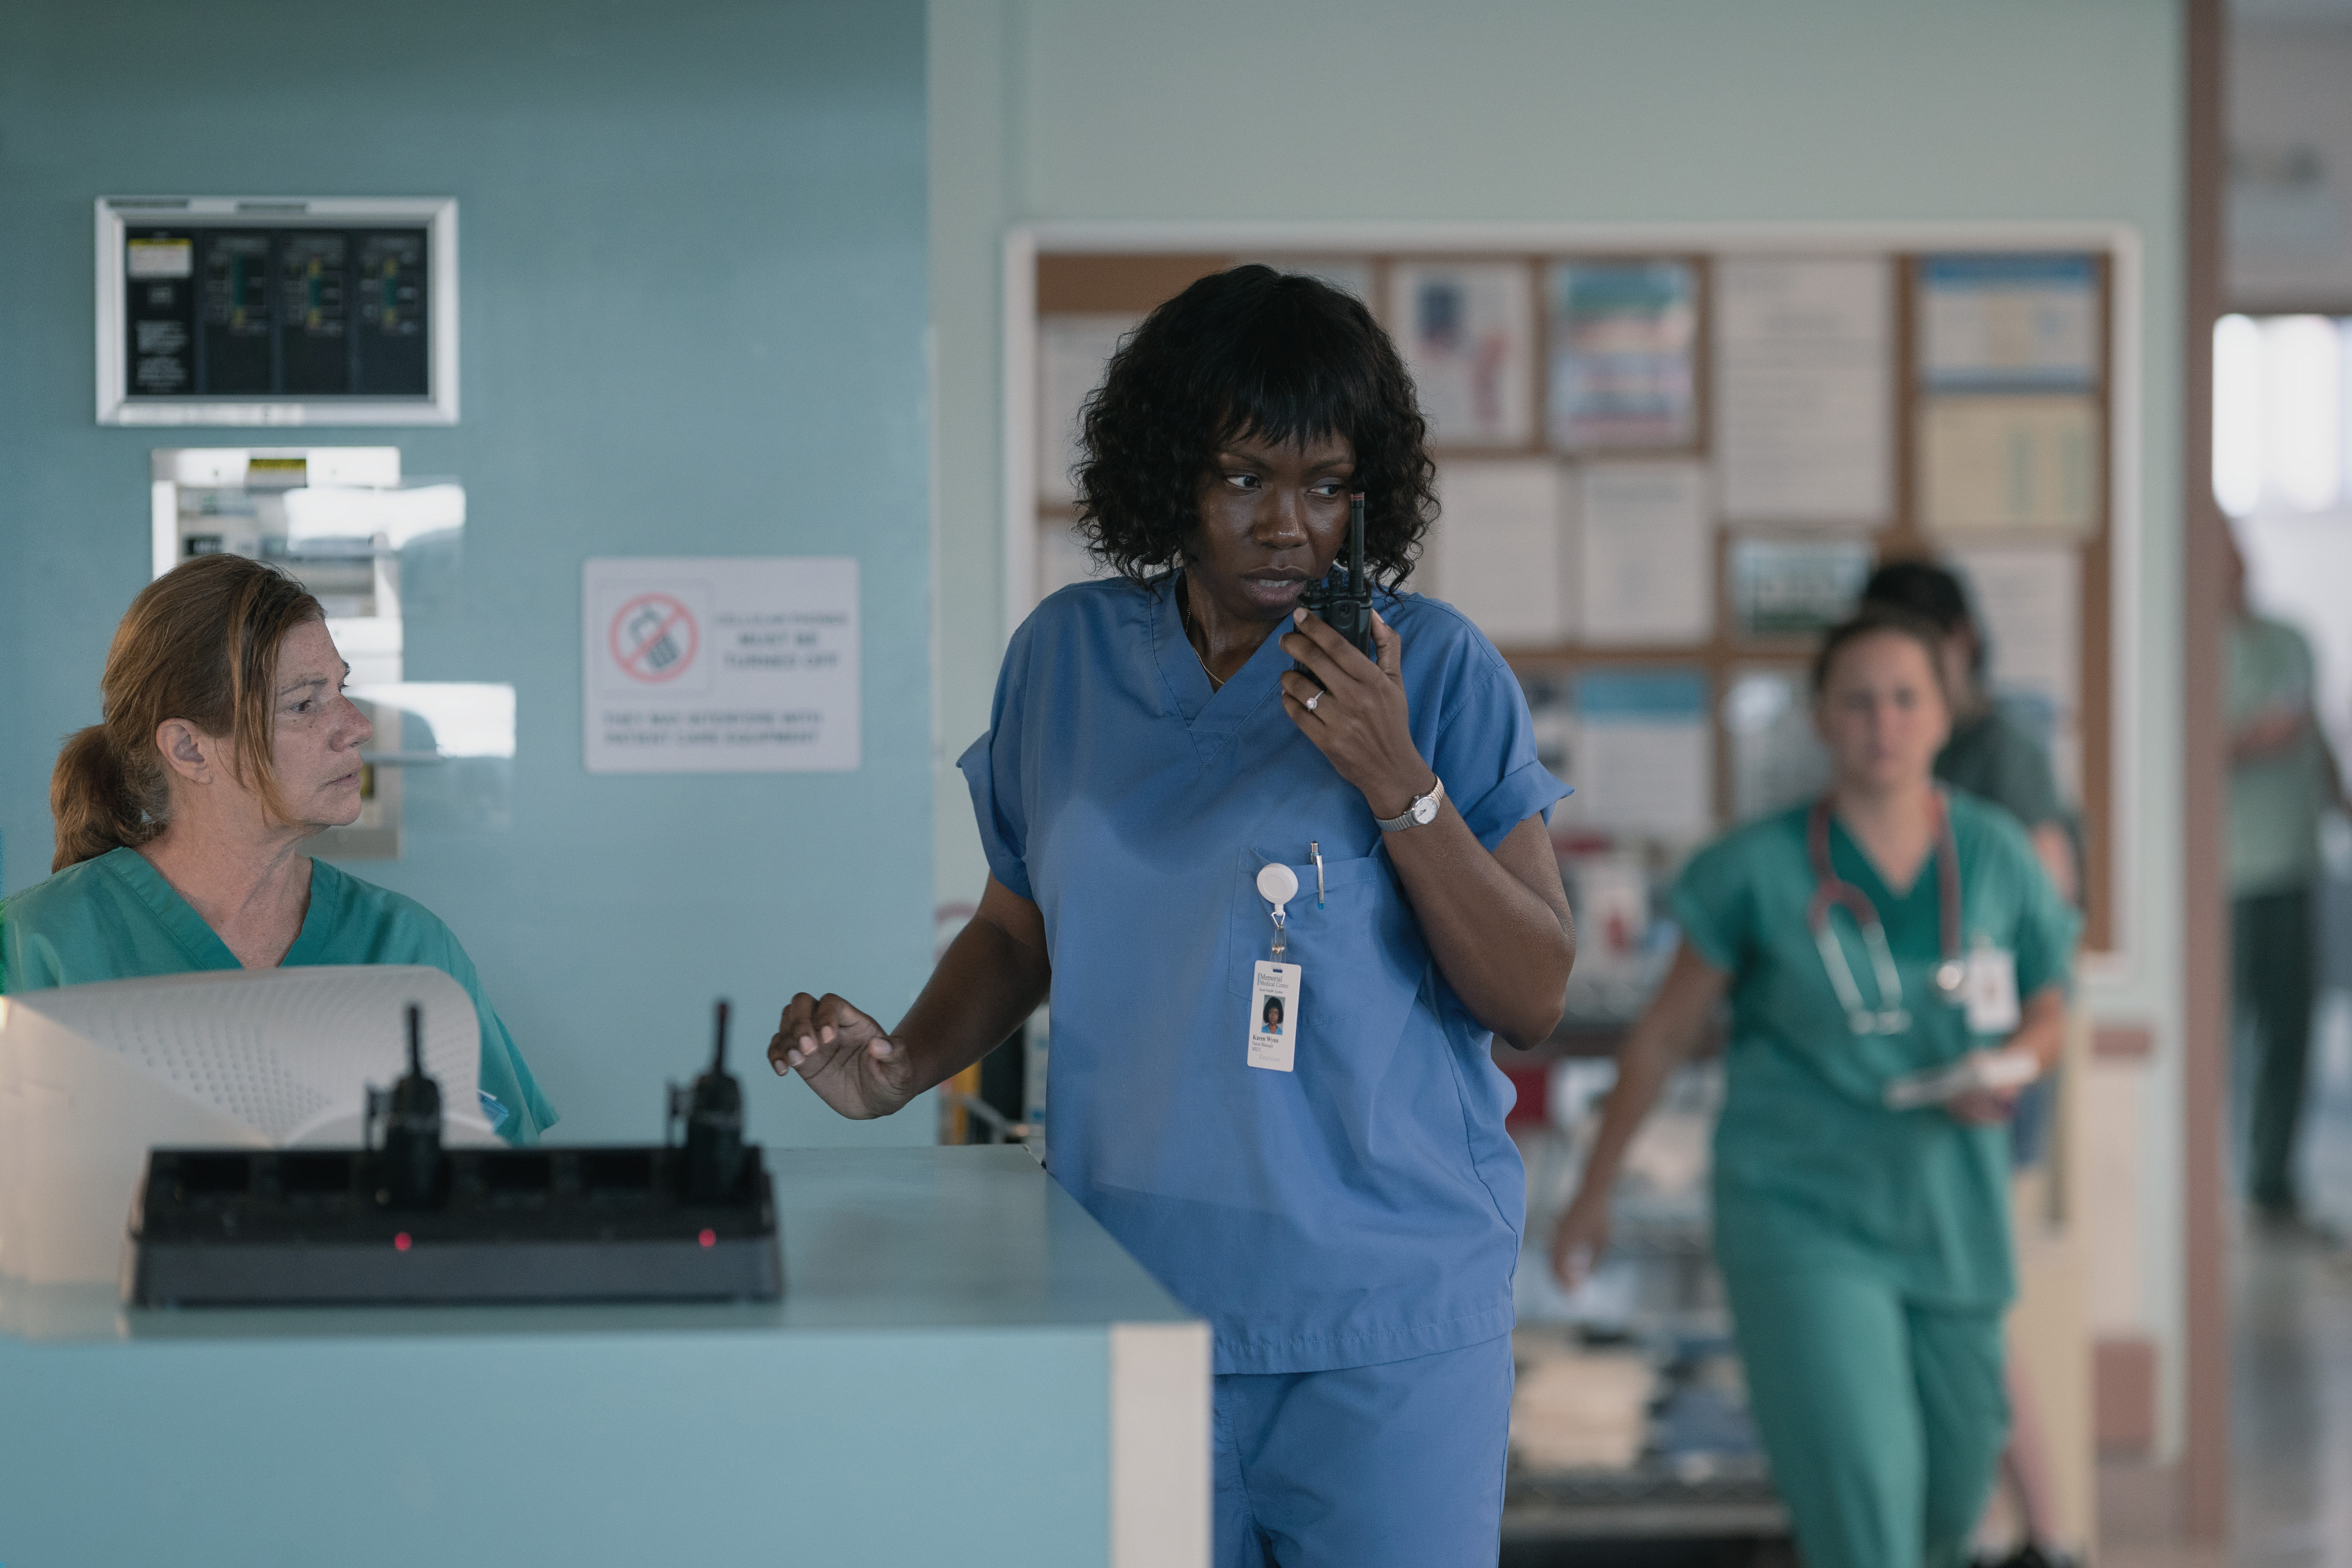 Adepero Oduye playing Nurse Manager Karen Wynn on a walkie talkie